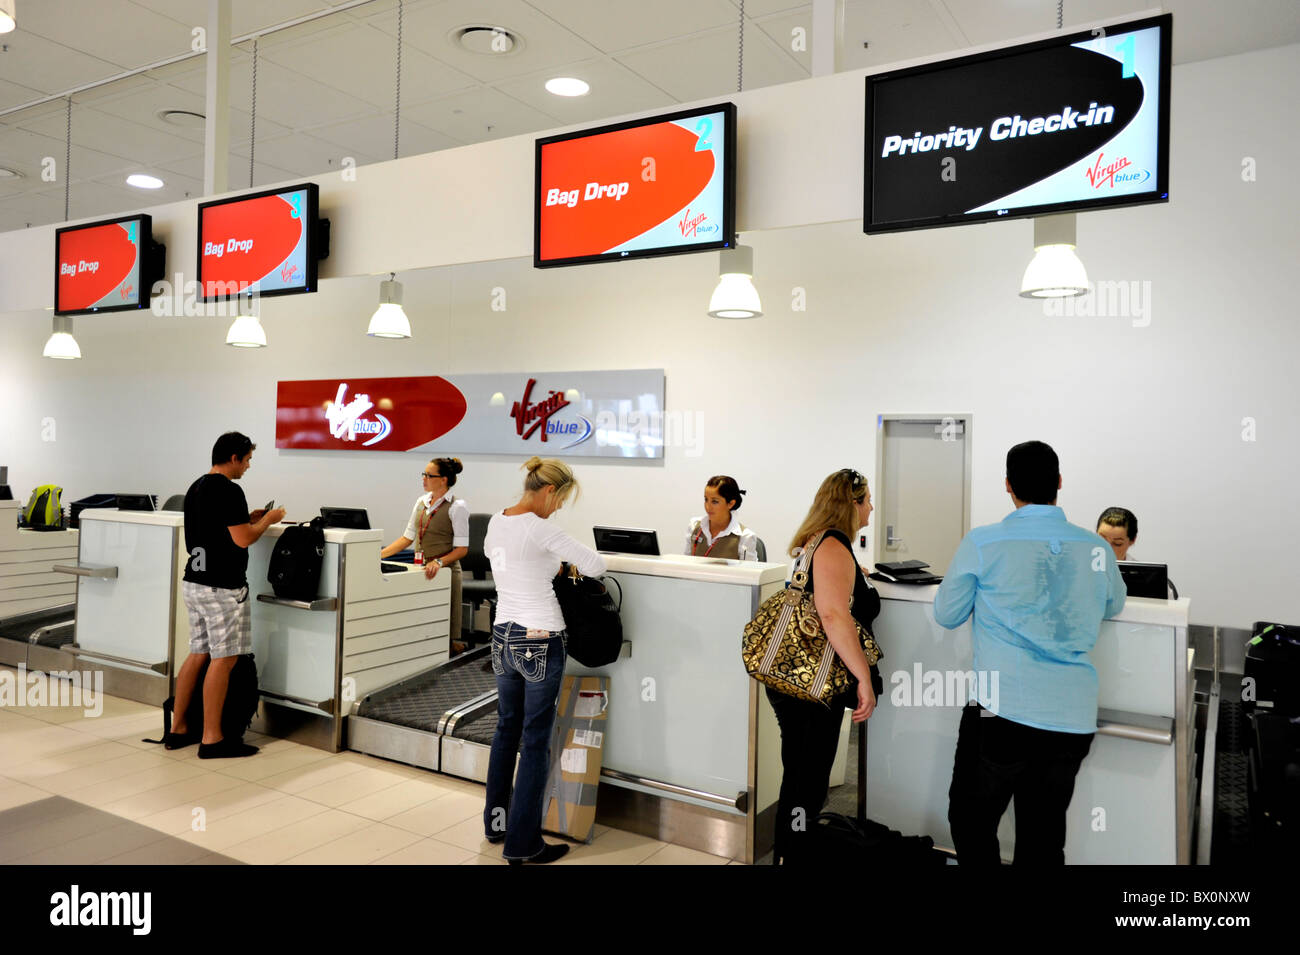 Prioridad en el Check-in en el Virgin counter en Aeropuerto de Gold Coast Australia Foto de stock